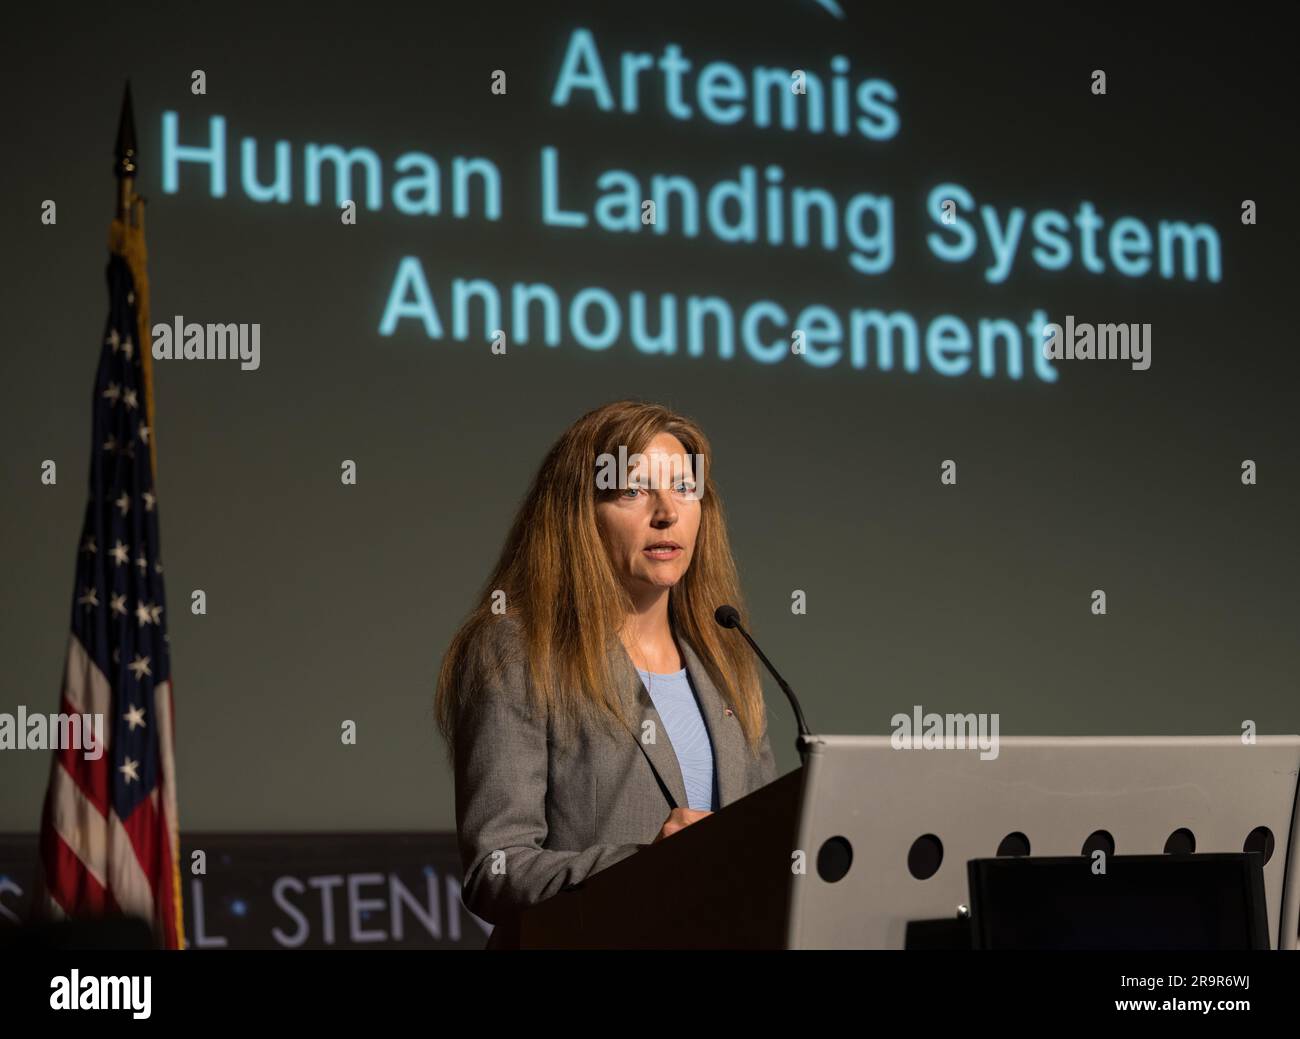 Annonce du système d'atterrissage humain Artemis. Lisa Watson-Morgan,  responsable du programme du système d'atterrissage humain, fait des  remarques lors d'un événement annonçant Blue Origin comme société choisie  pour développer un système d'atterrissage